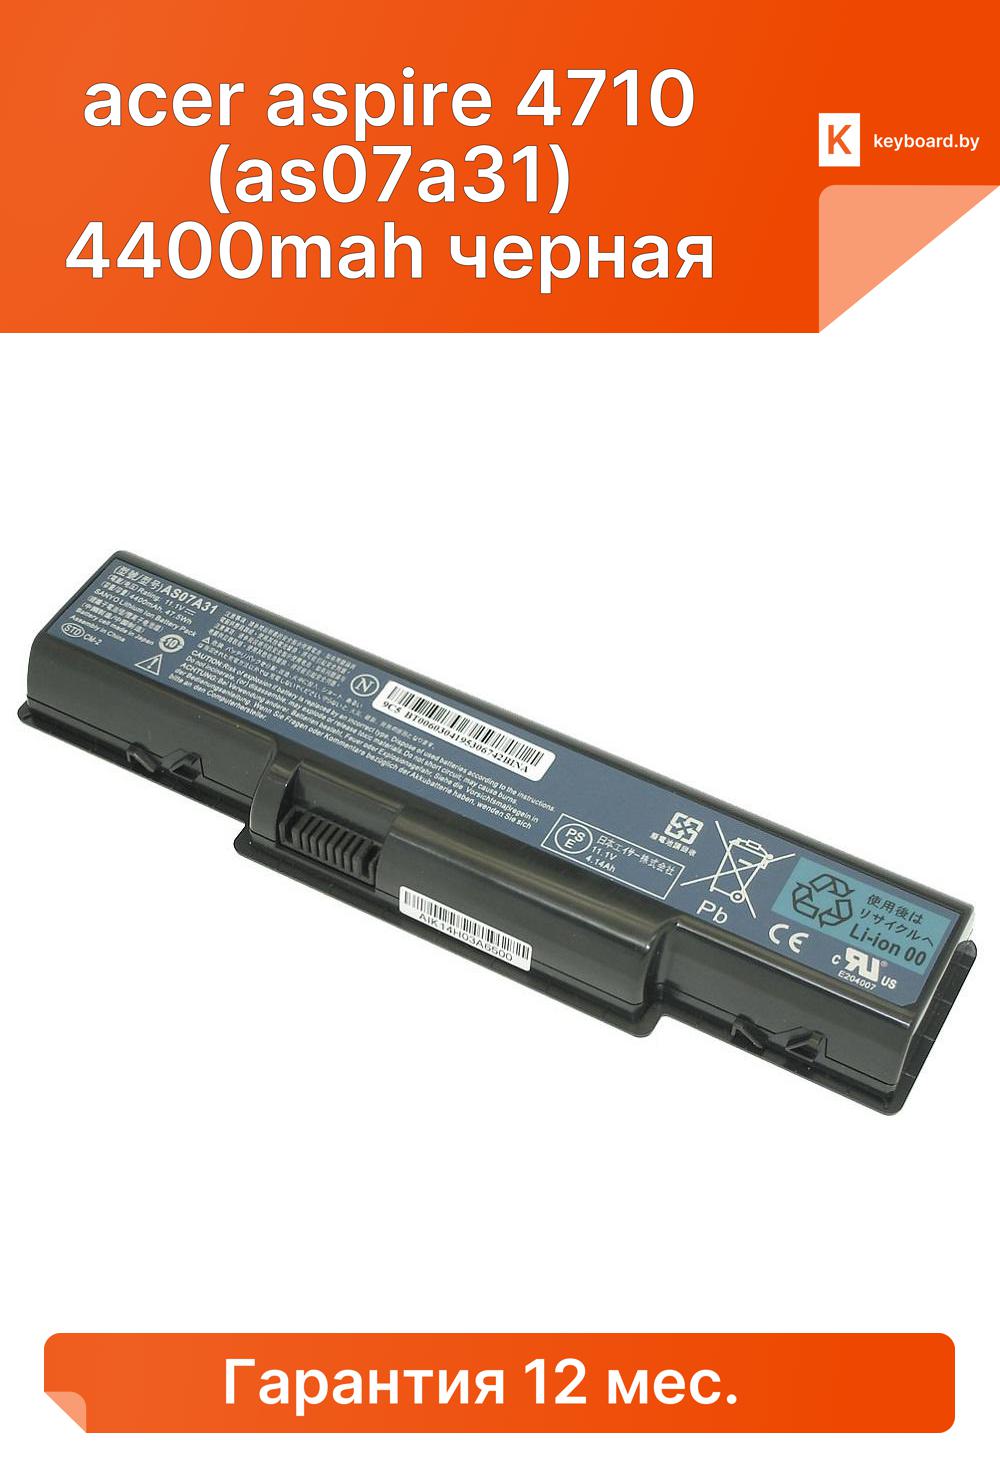 Аккумуляторная батарея для ноутбука acer aspire 4710 (as07a31) 4400mah черная